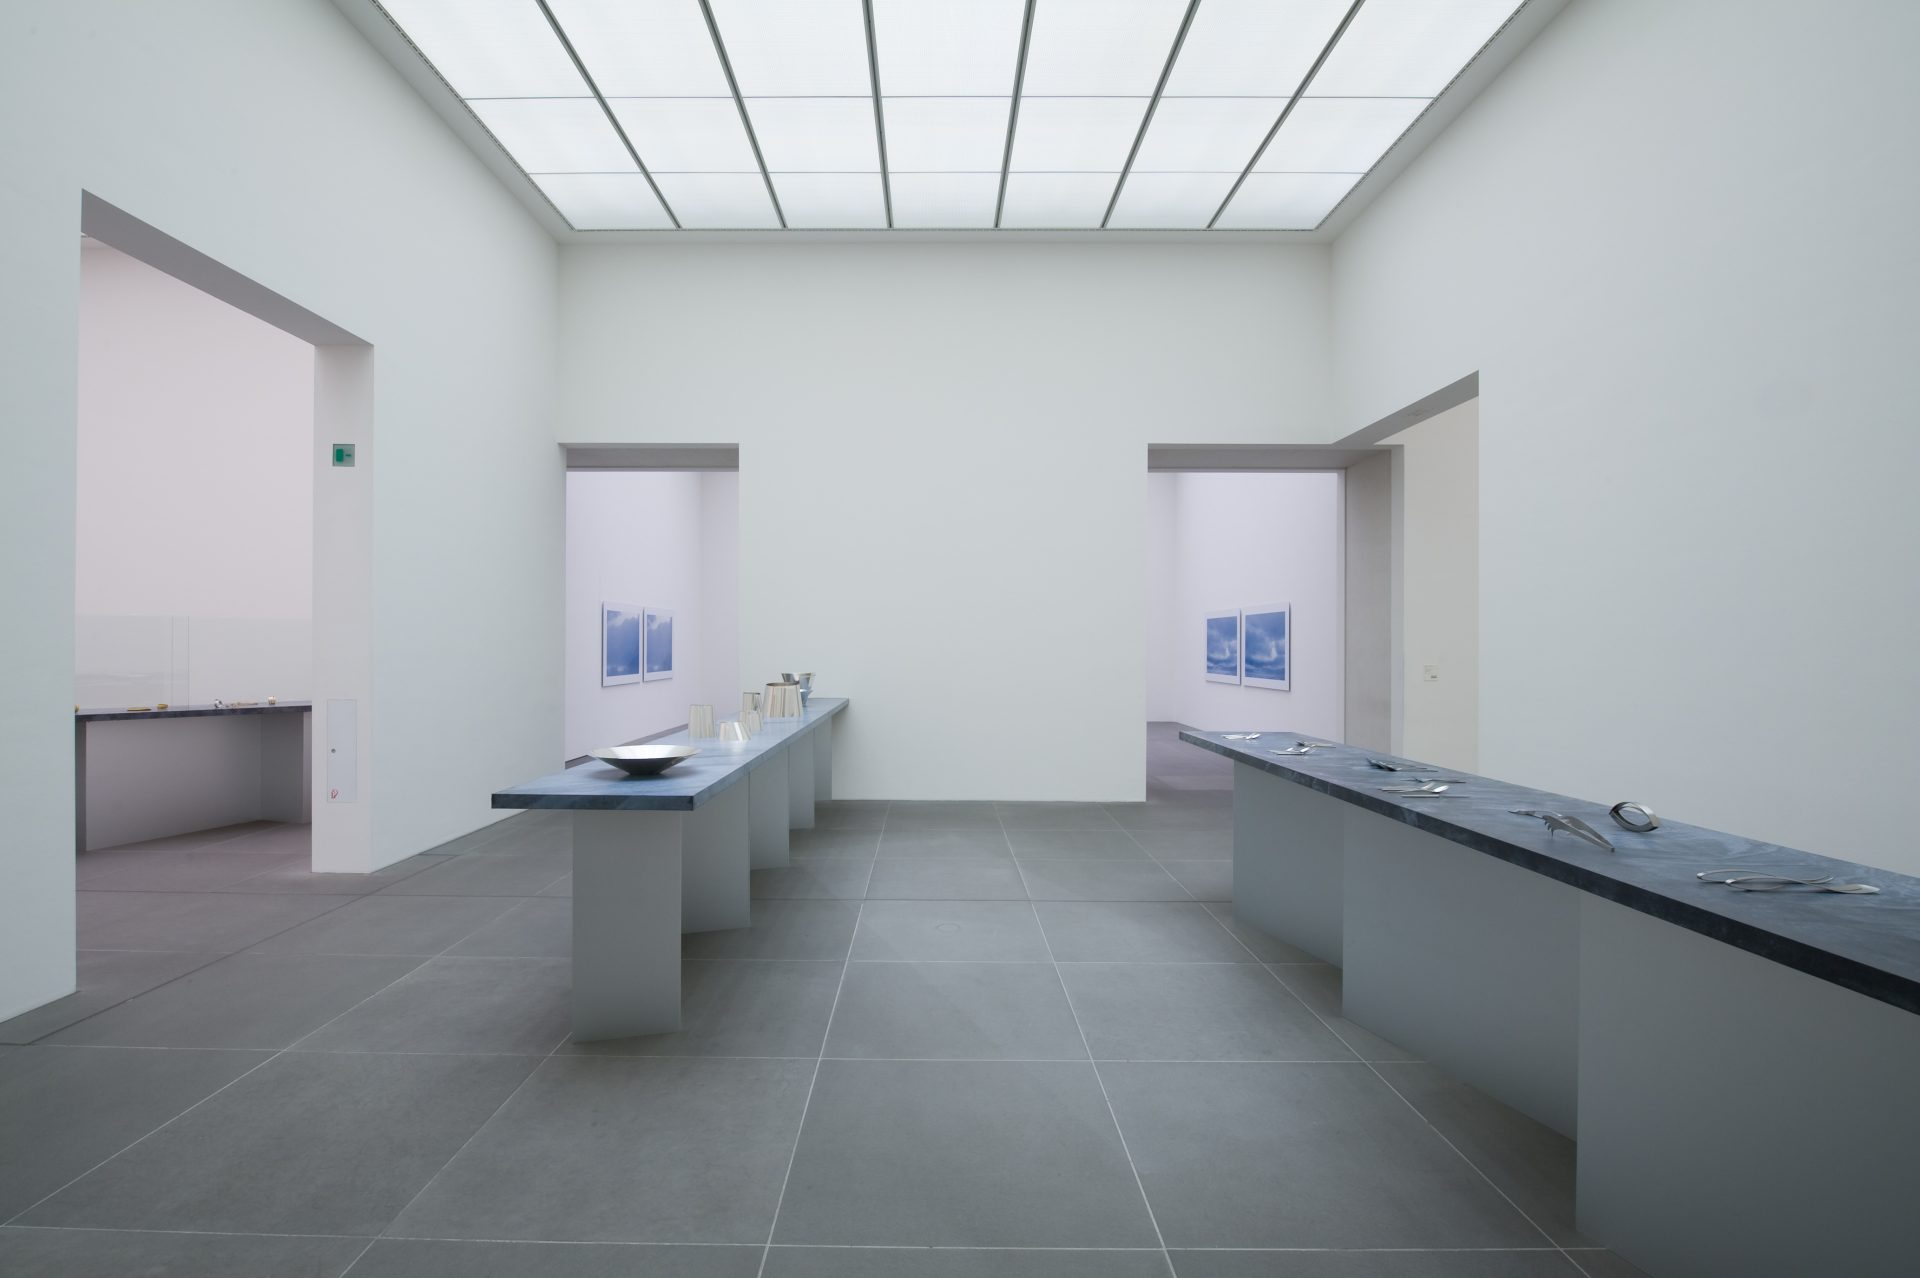 Frontalansicht Ausstellungsraum, links mit silberne Gefäßen, rechts silbernes Essbesteck auf blauem Podest.